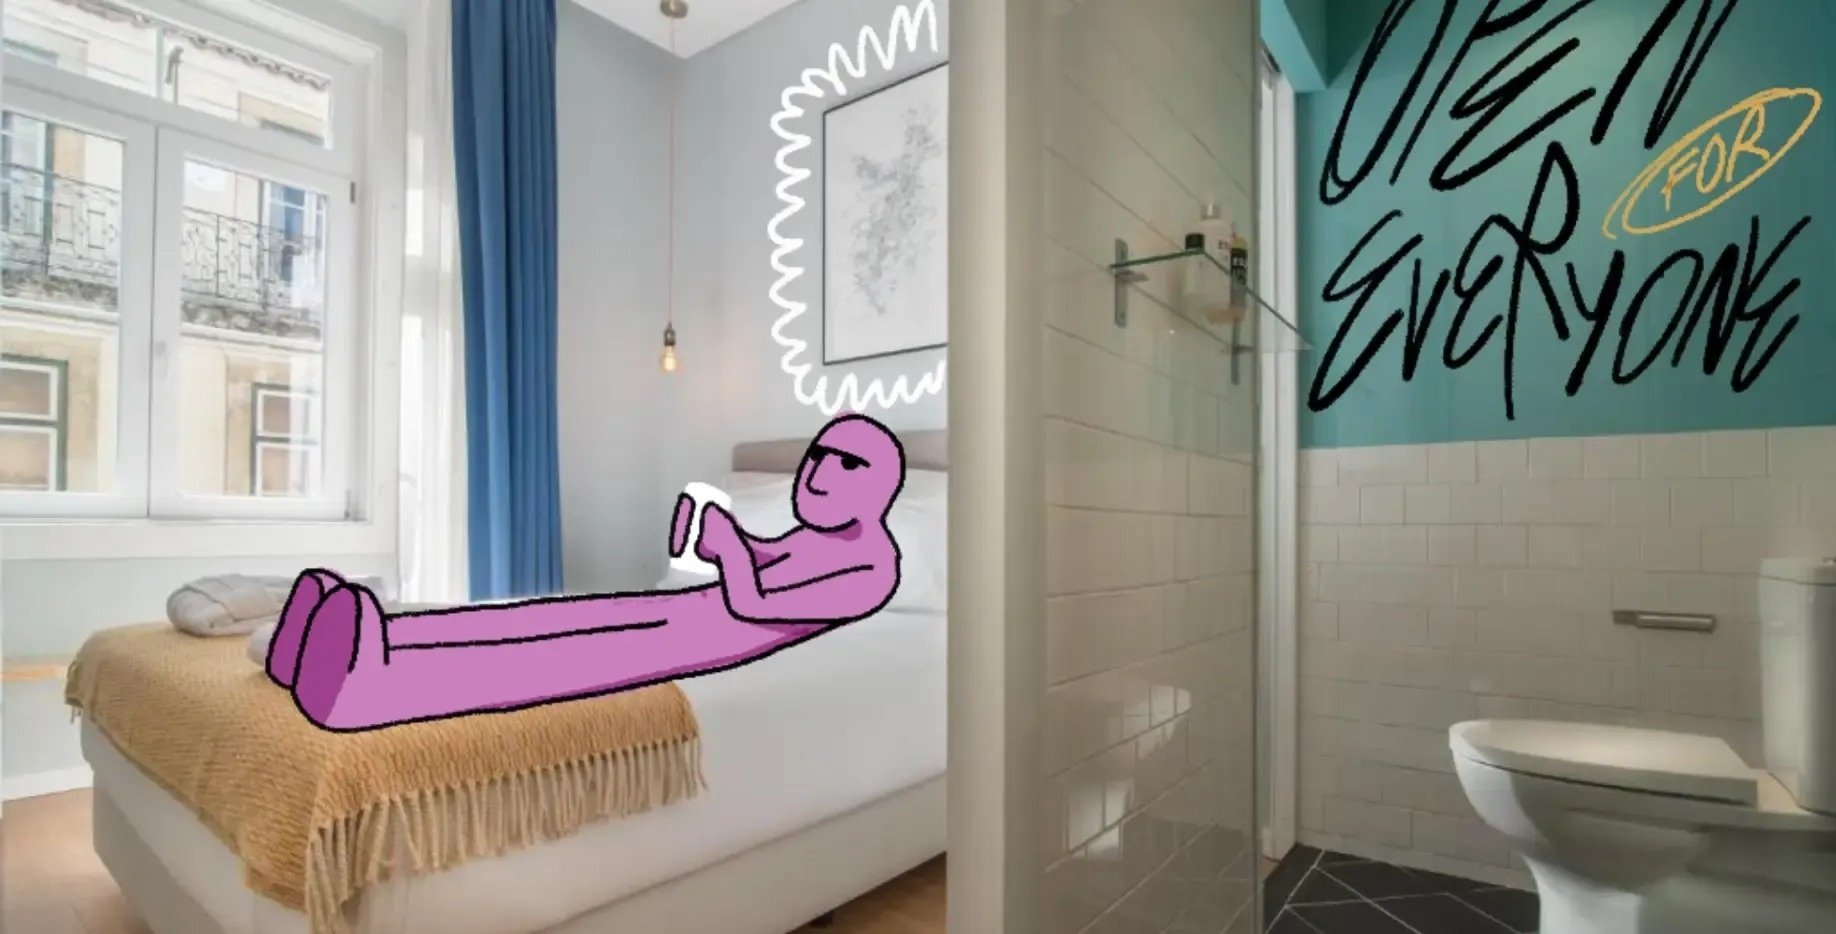 un dibujo de una persona acostada en una cama junto a un baño con la palabra " todos " pintada en la pared